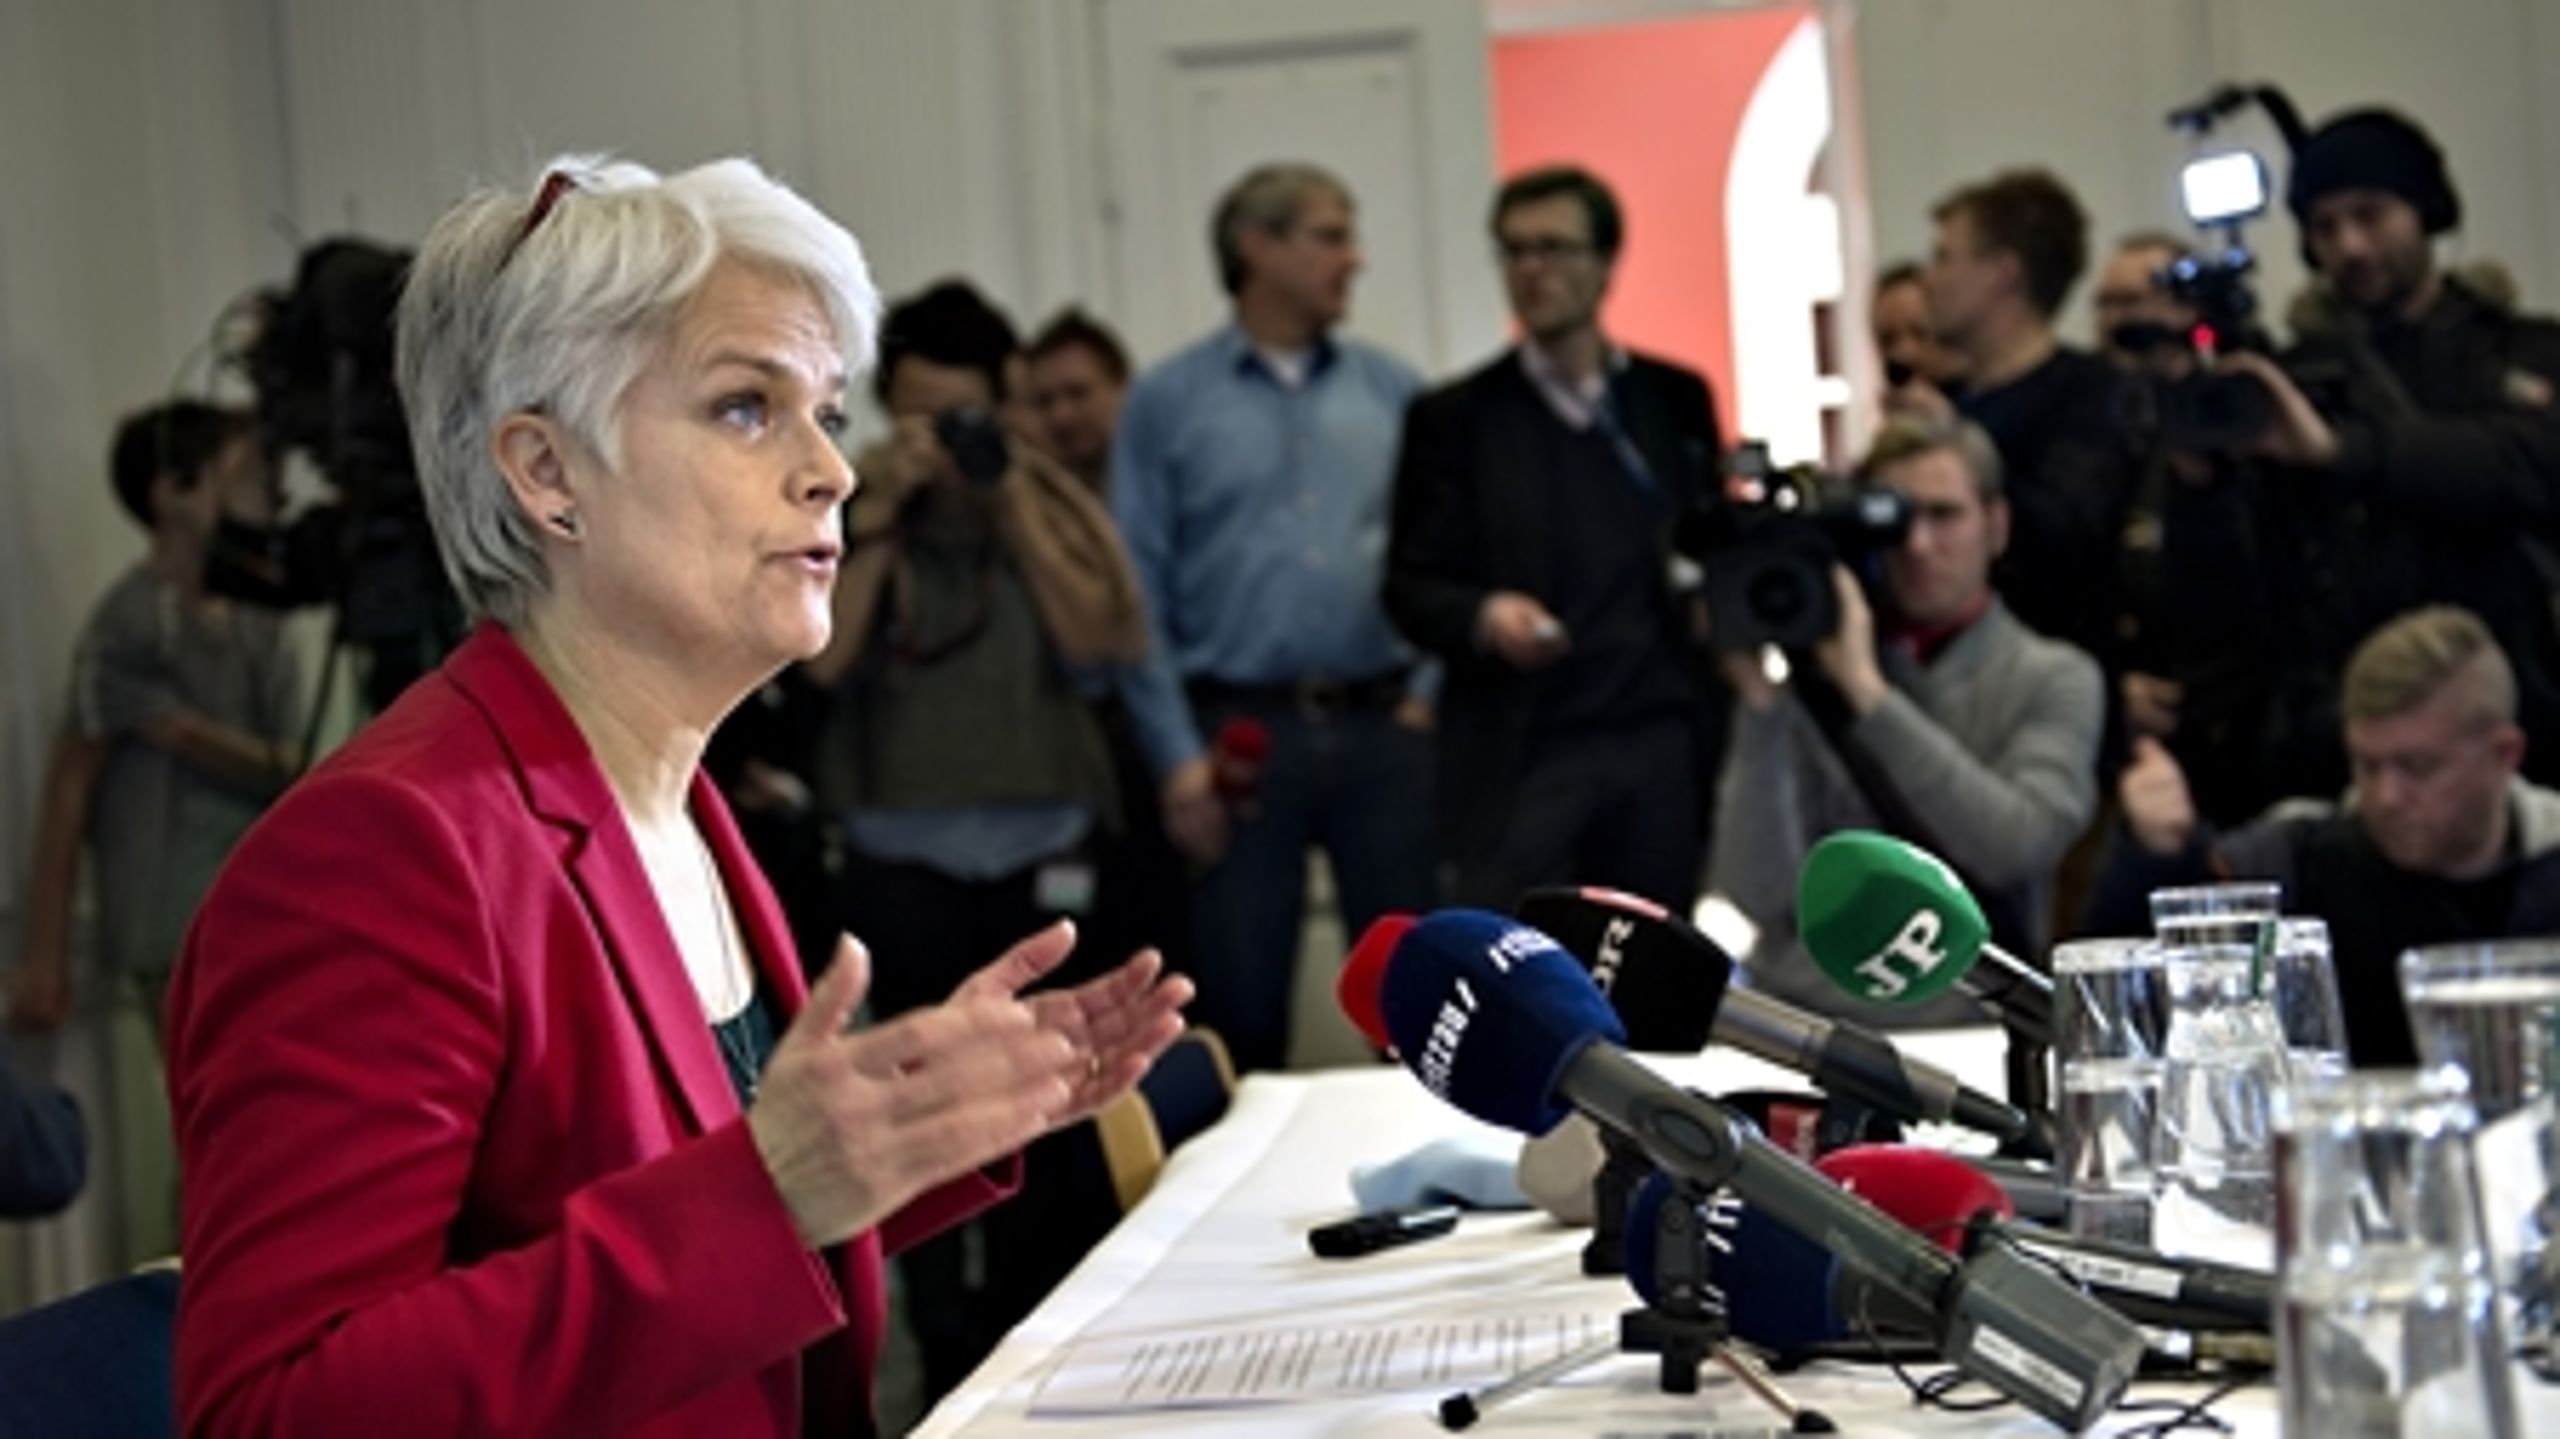 "Partiet står over for store udfordringer, men denne situation kan blive en ny start for SF," sagde Annette Vilhelmsen på pressemødet, hvor hun trak sig som formand.